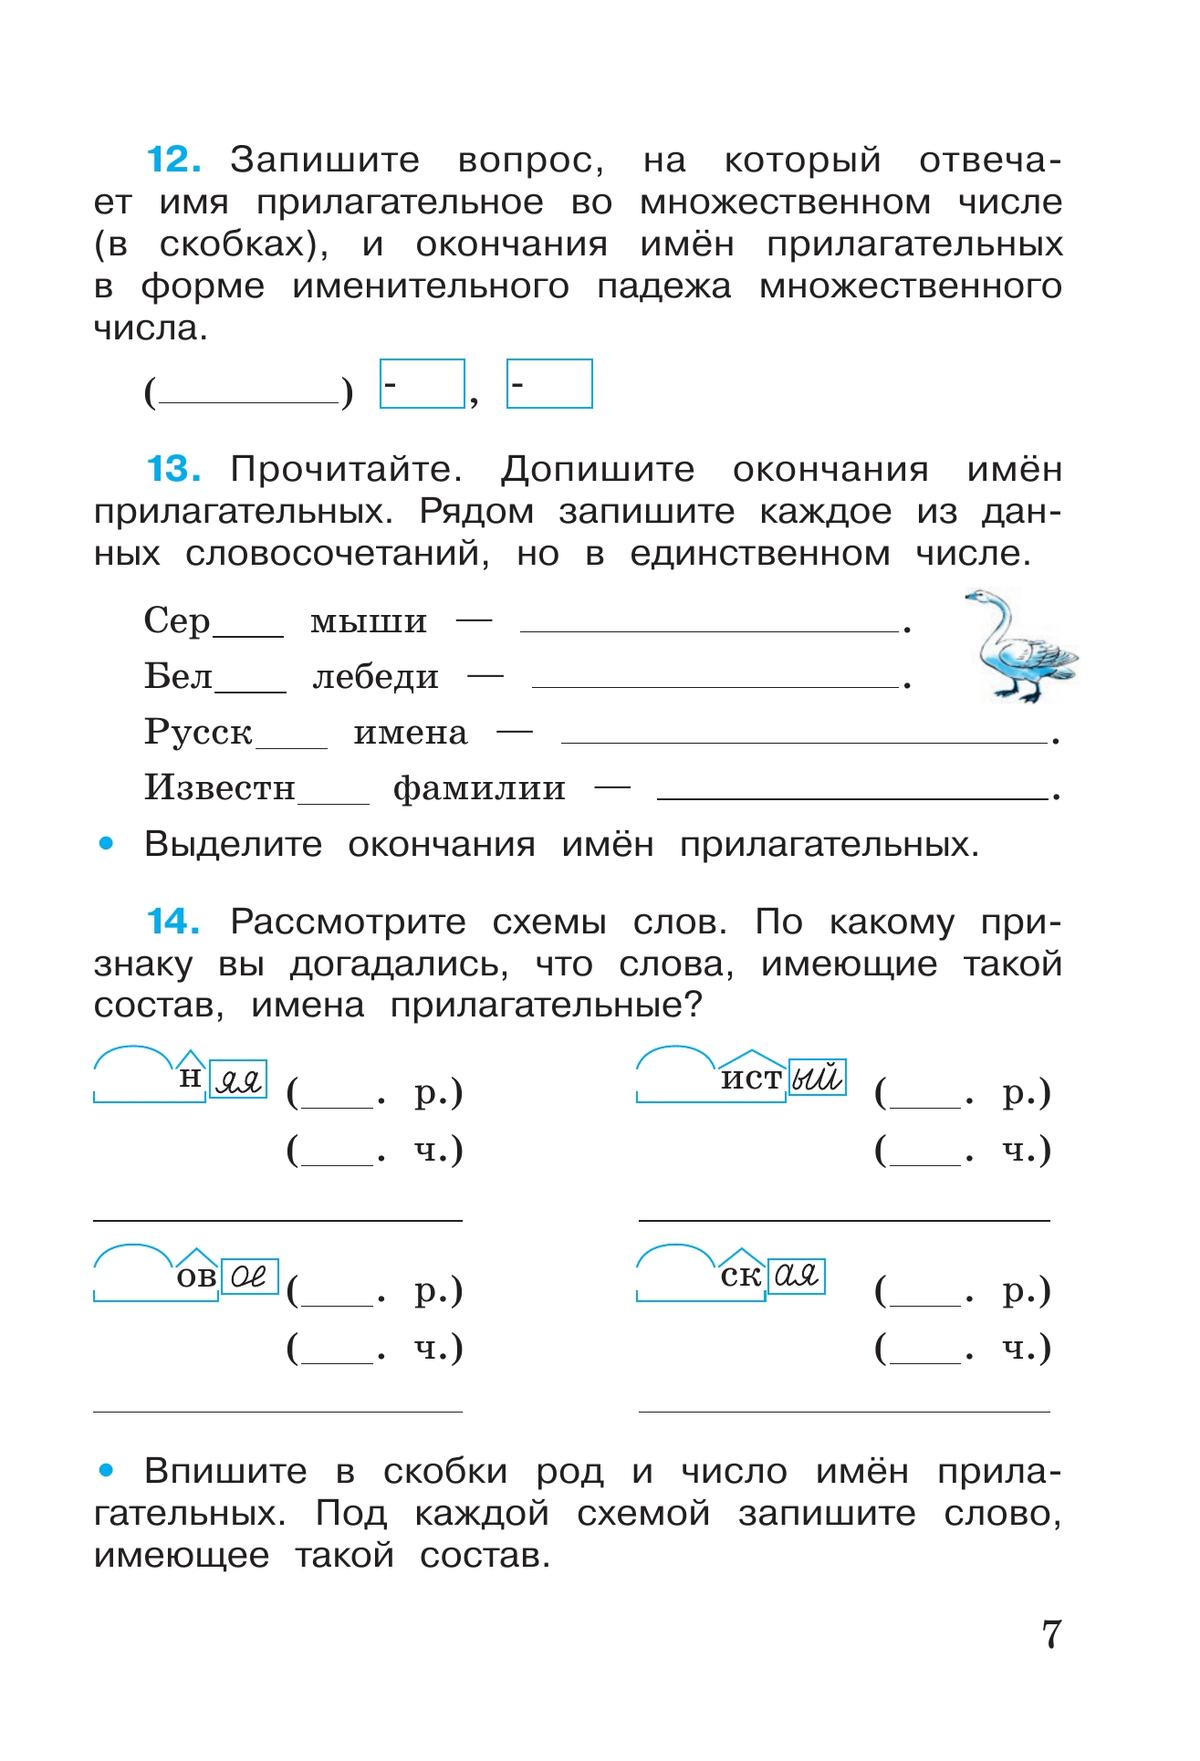 Русский язык. Рабочая тетрадь. 4 класс. В 2 частях. Часть 2 6